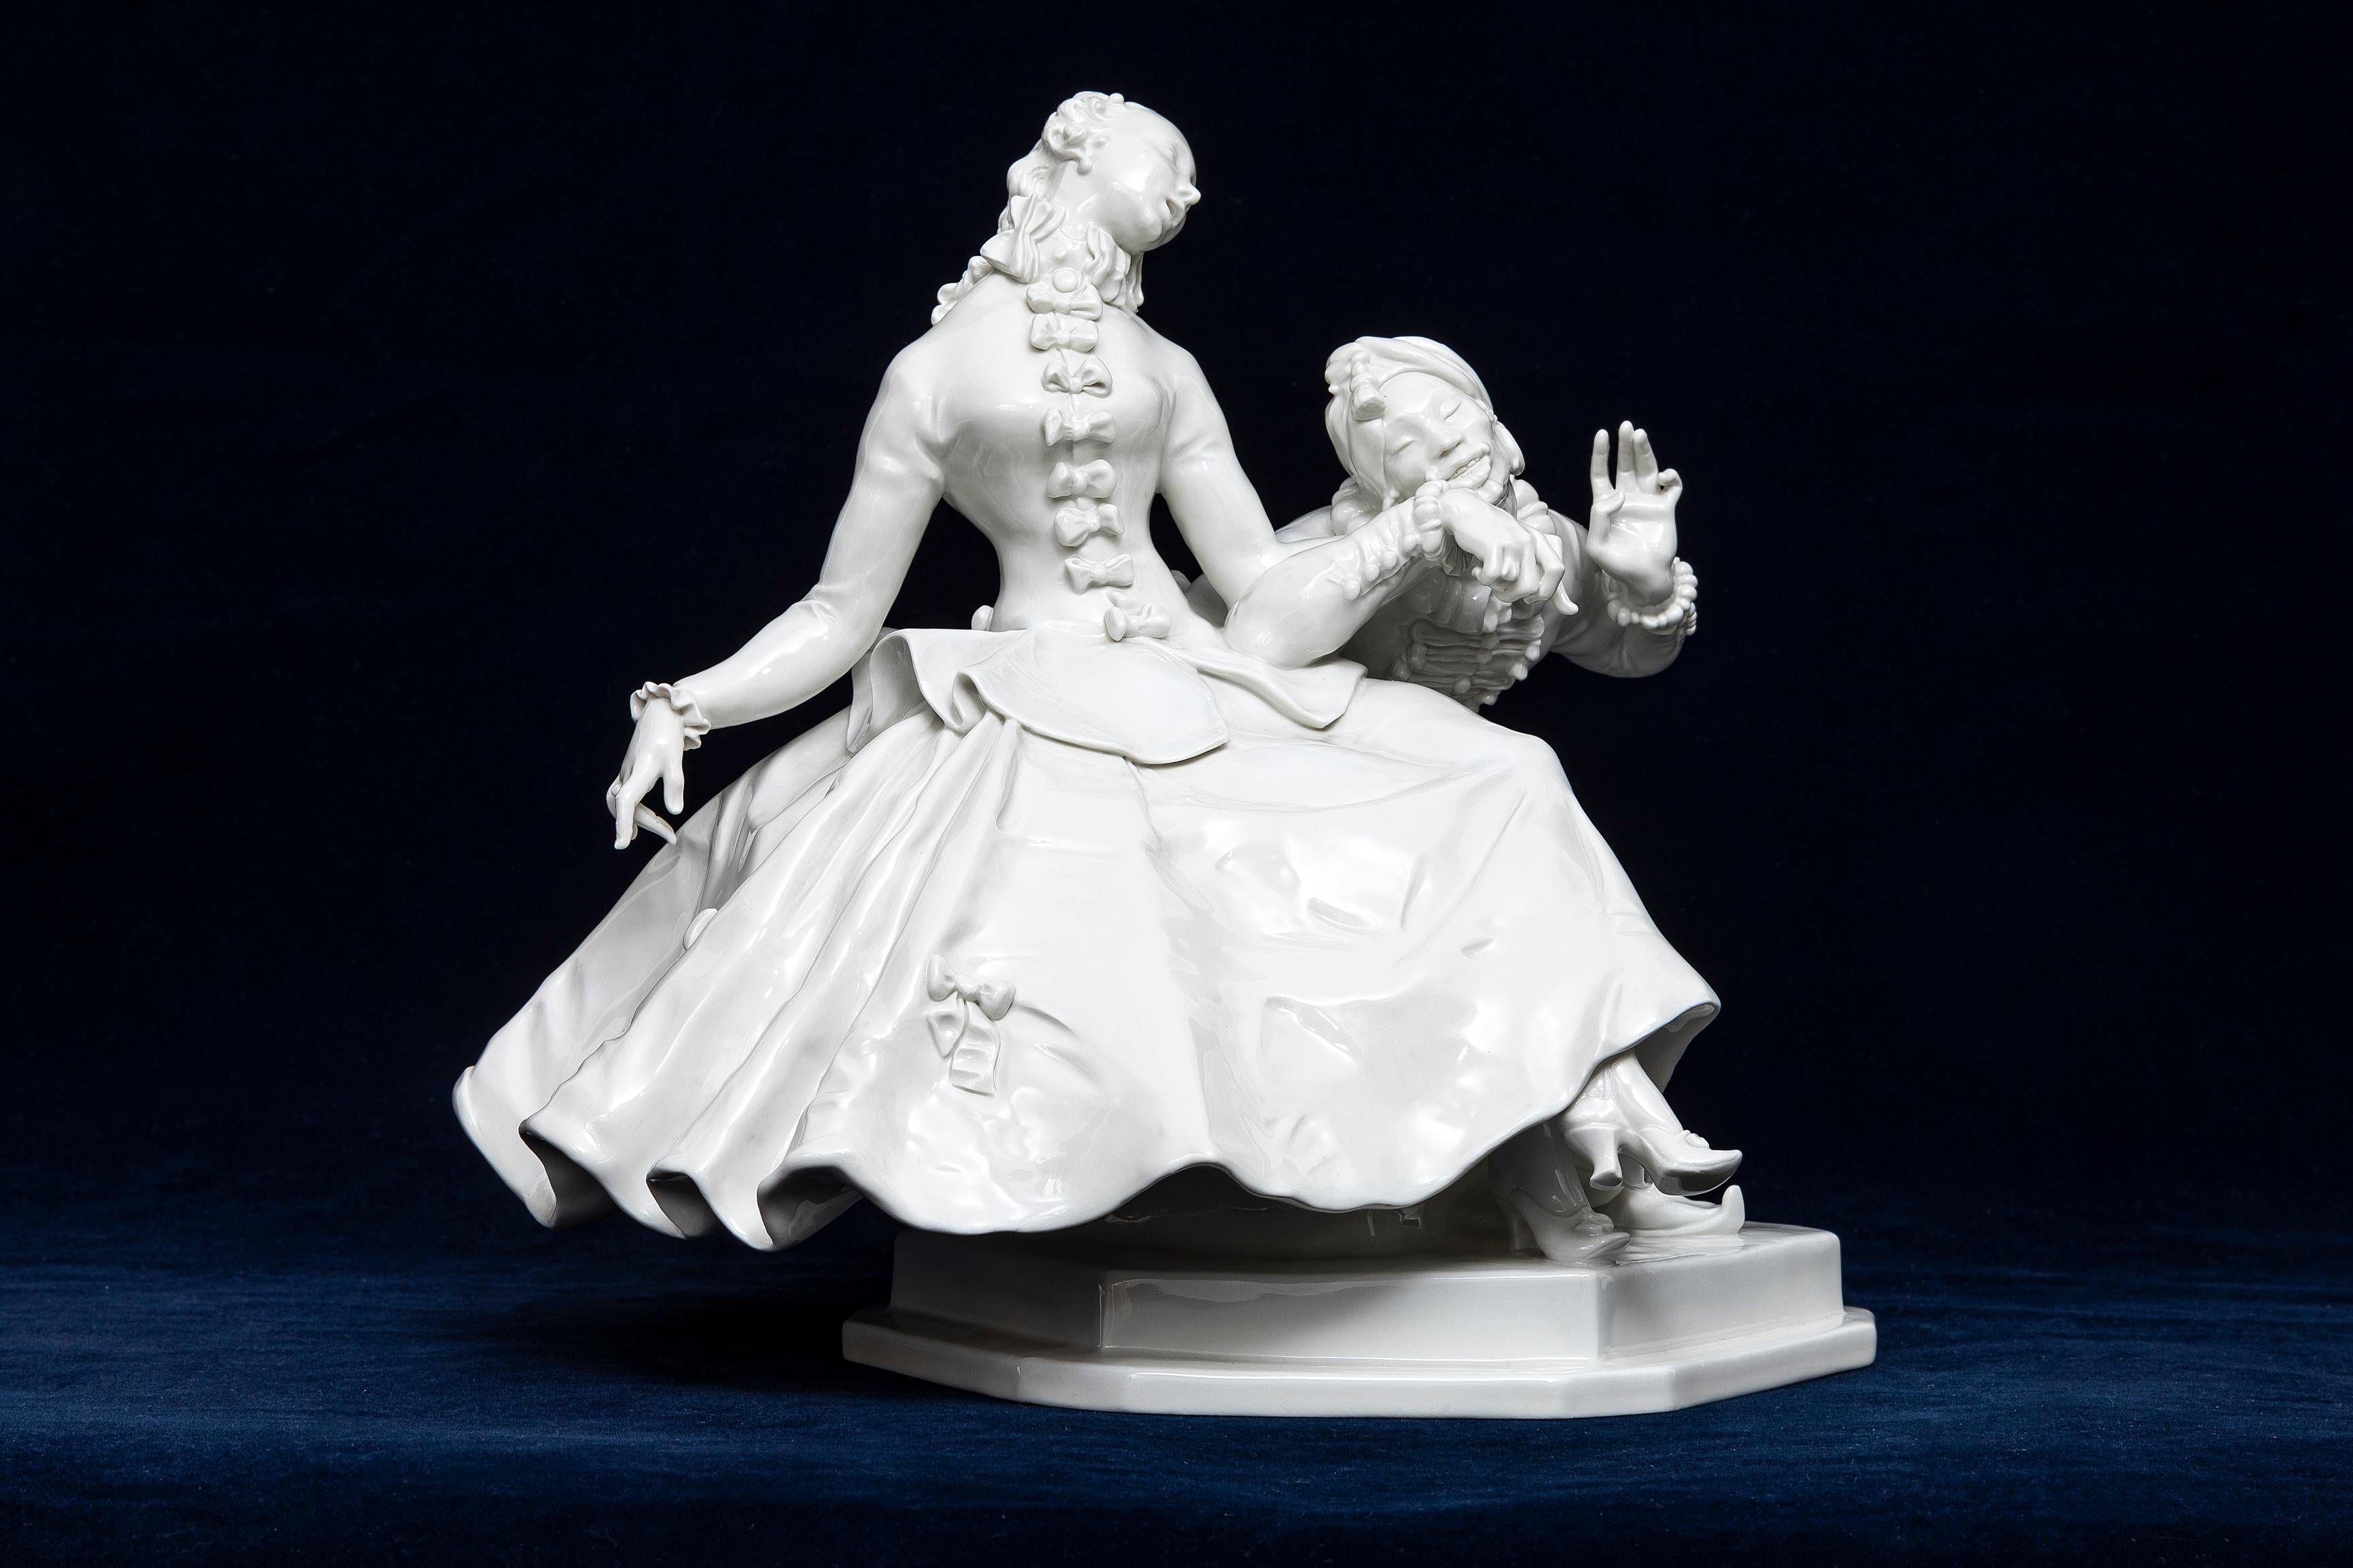 Couple de figurines en porcelaine de Meissen Blanc de Chine du 20e siècle, une femme et un homme.  Un couple élégamment vêtu se fait une cour flirteuse dans cette porcelaine de Meissen du début du XXe siècle inspirée de la Commedia dell'Arte du